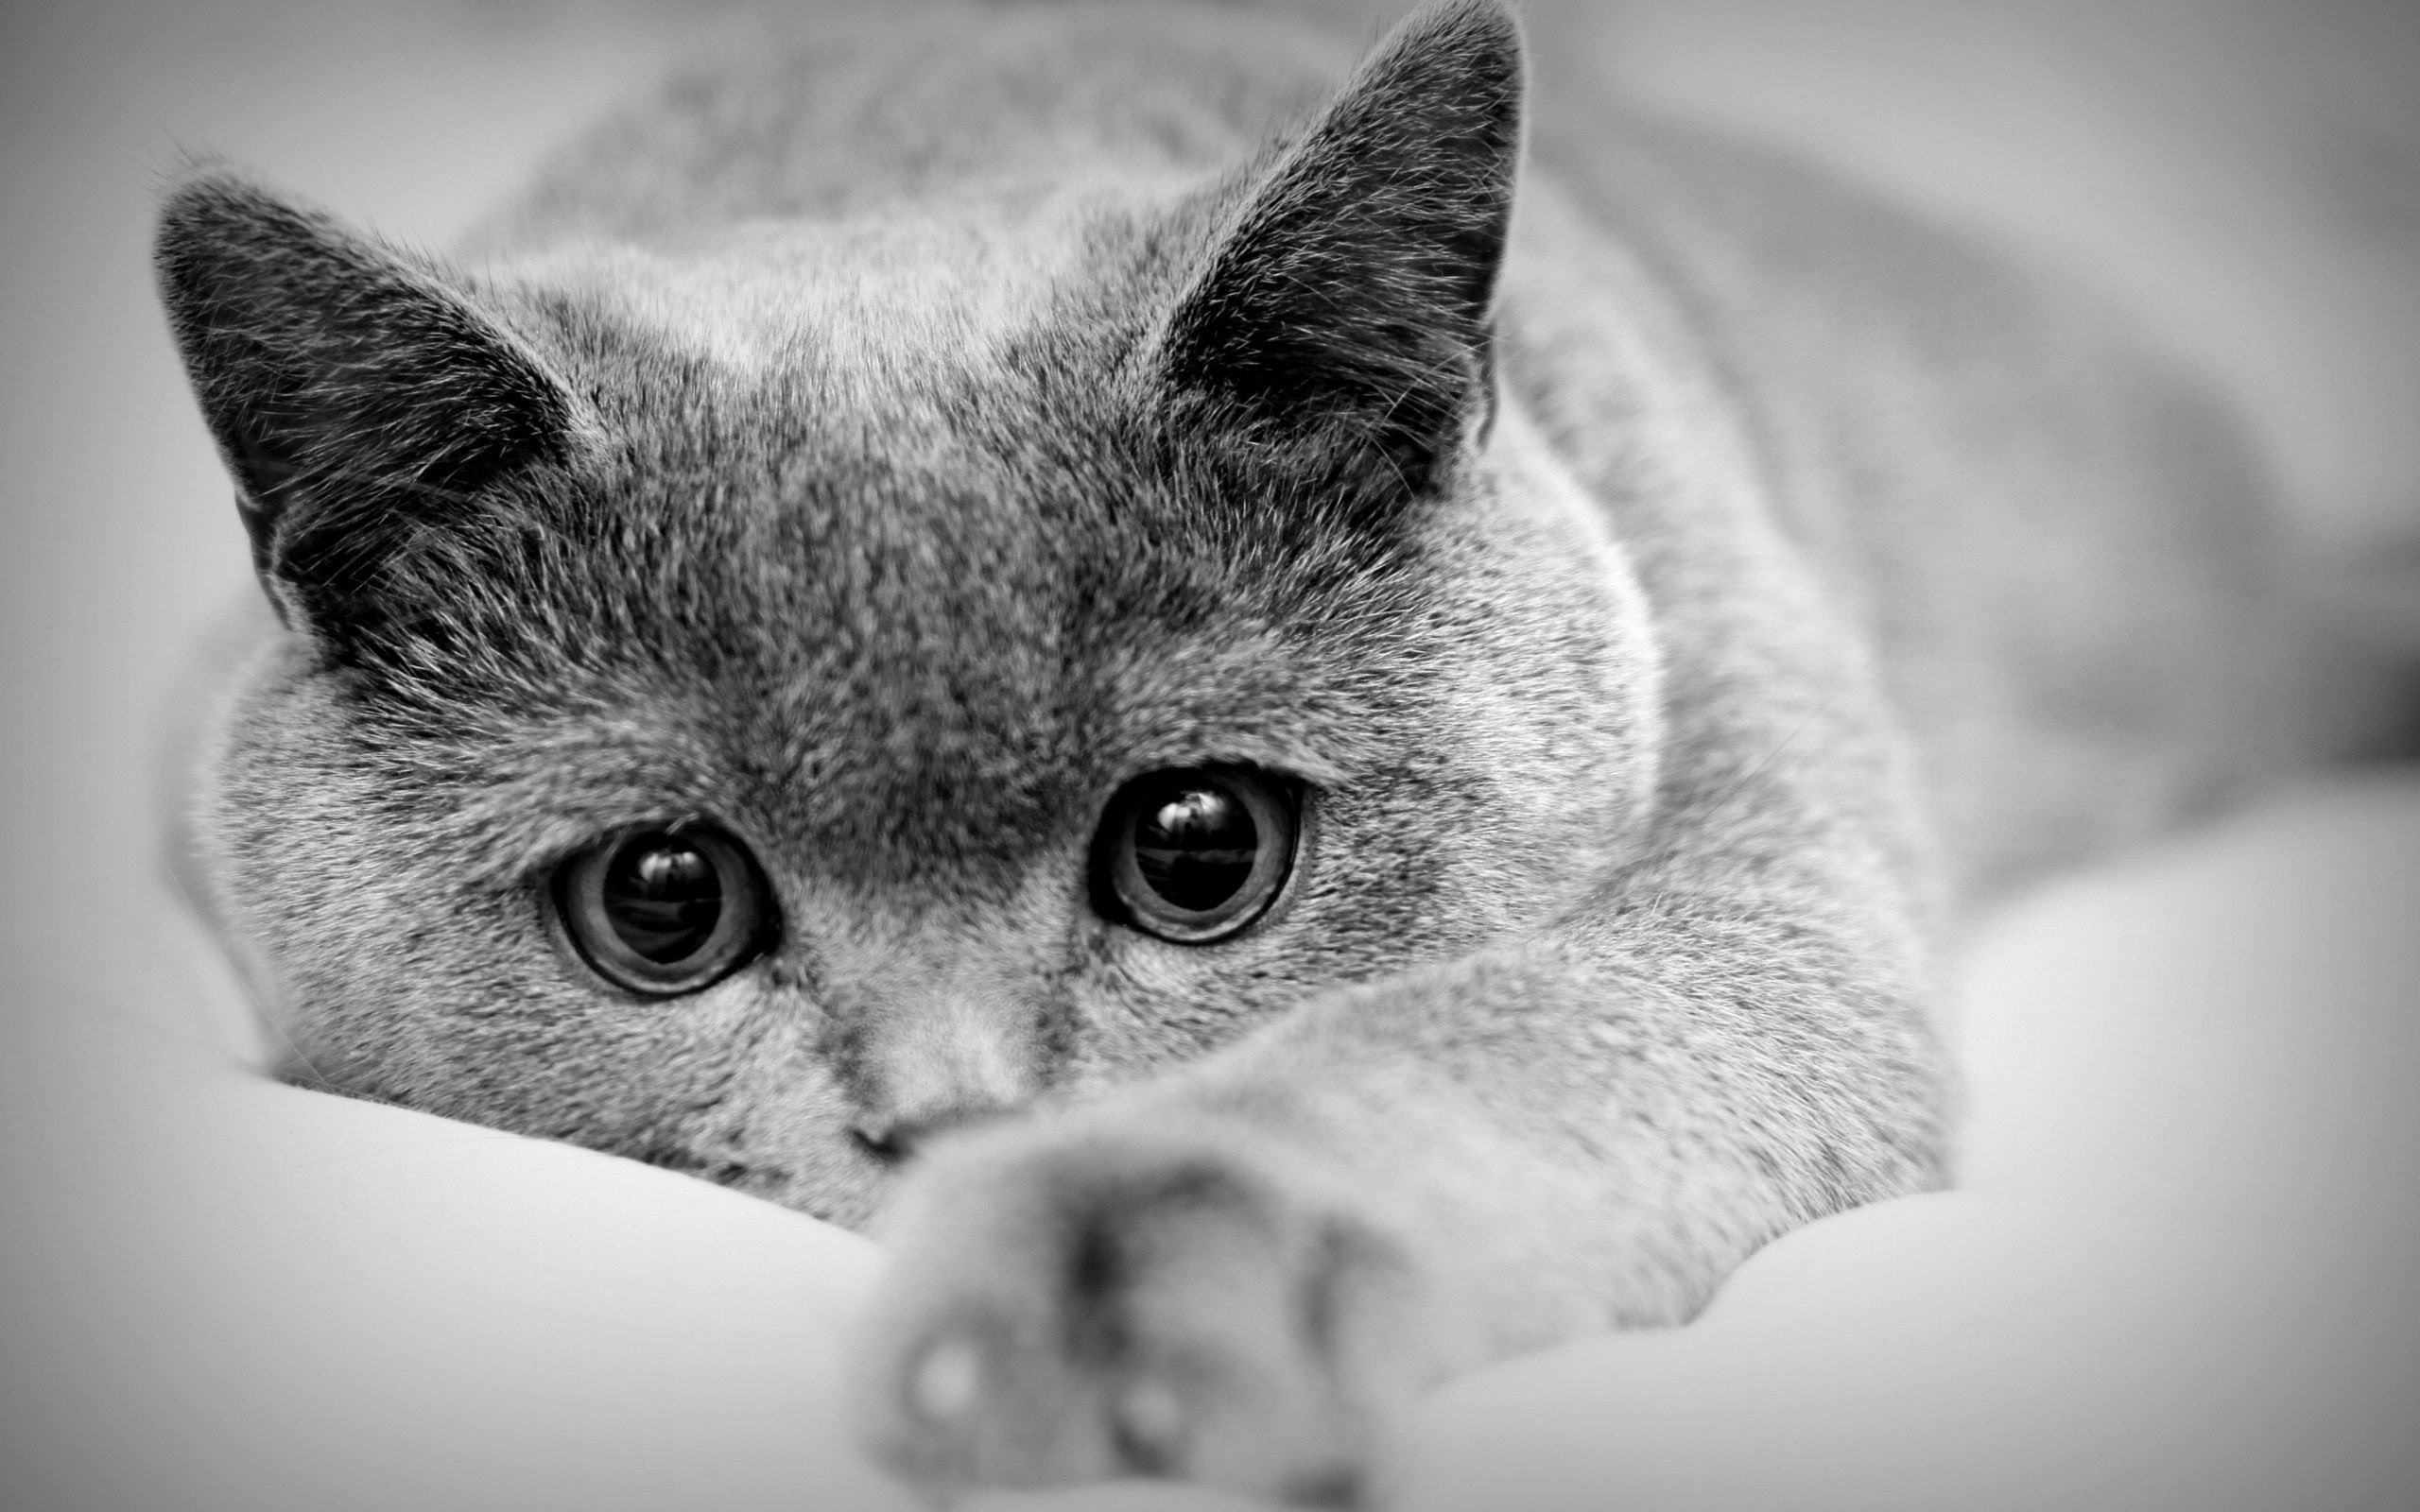 Sad cat feeling discomfort during pet pain awareness month